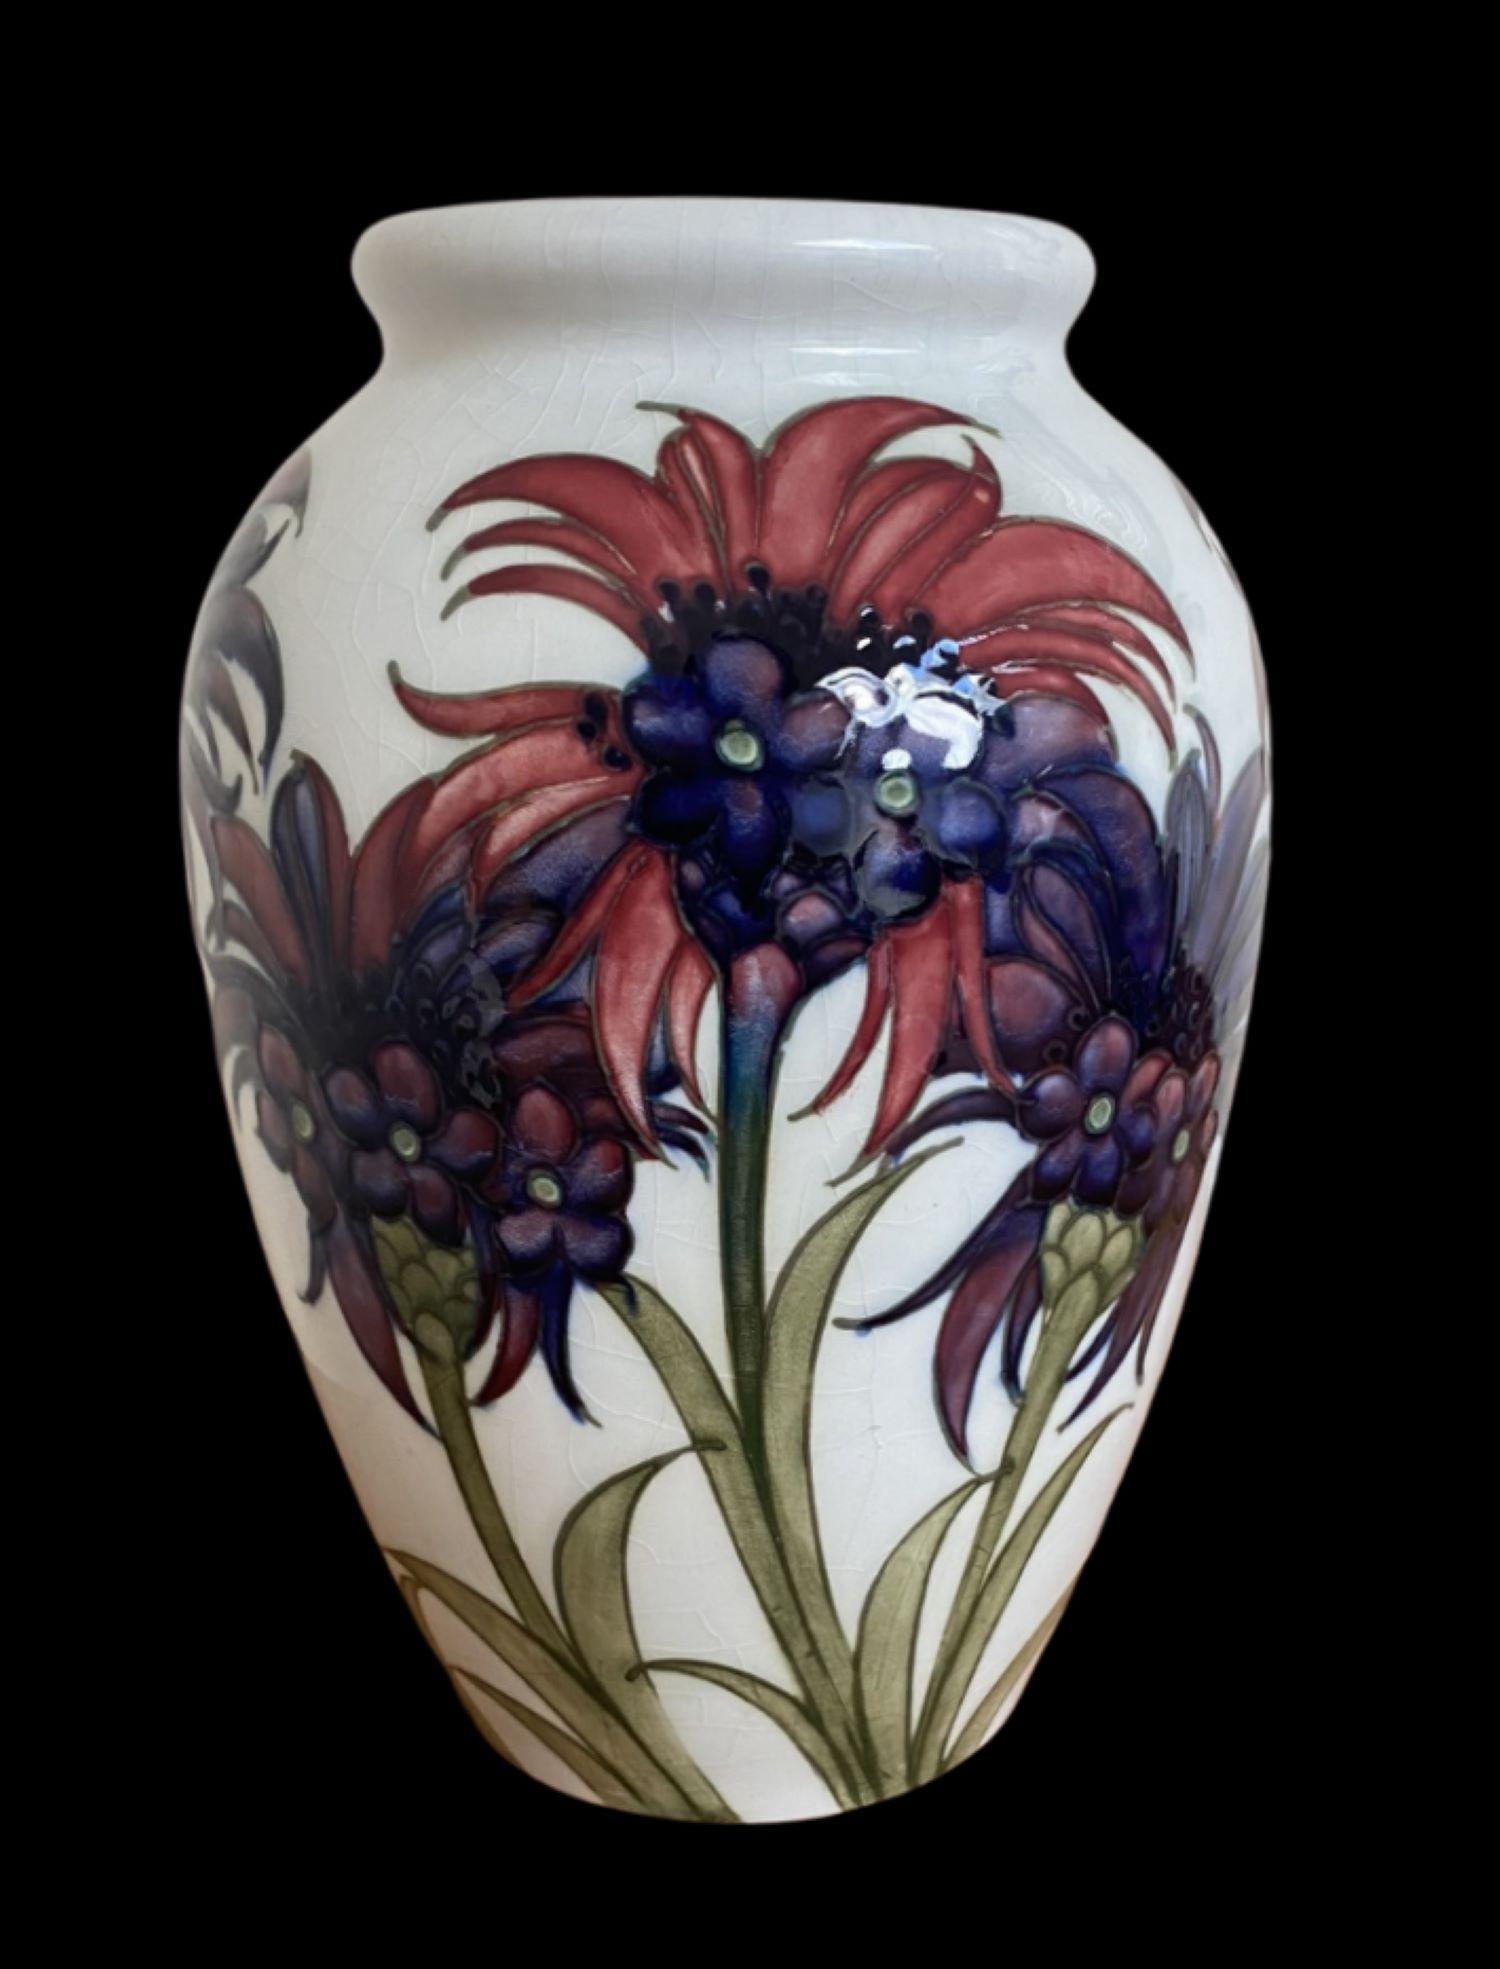 5082

Vase de William Moorcroft décoré d'un motif de bleuet sur fond blanc Circa 1920.

Dimensions
24 cm de haut, 15 cm de large

Affranchissement assuré gratuit
Garantie de remboursement de 14 jours
Membre de la BADA - achetez ce qu'il y a